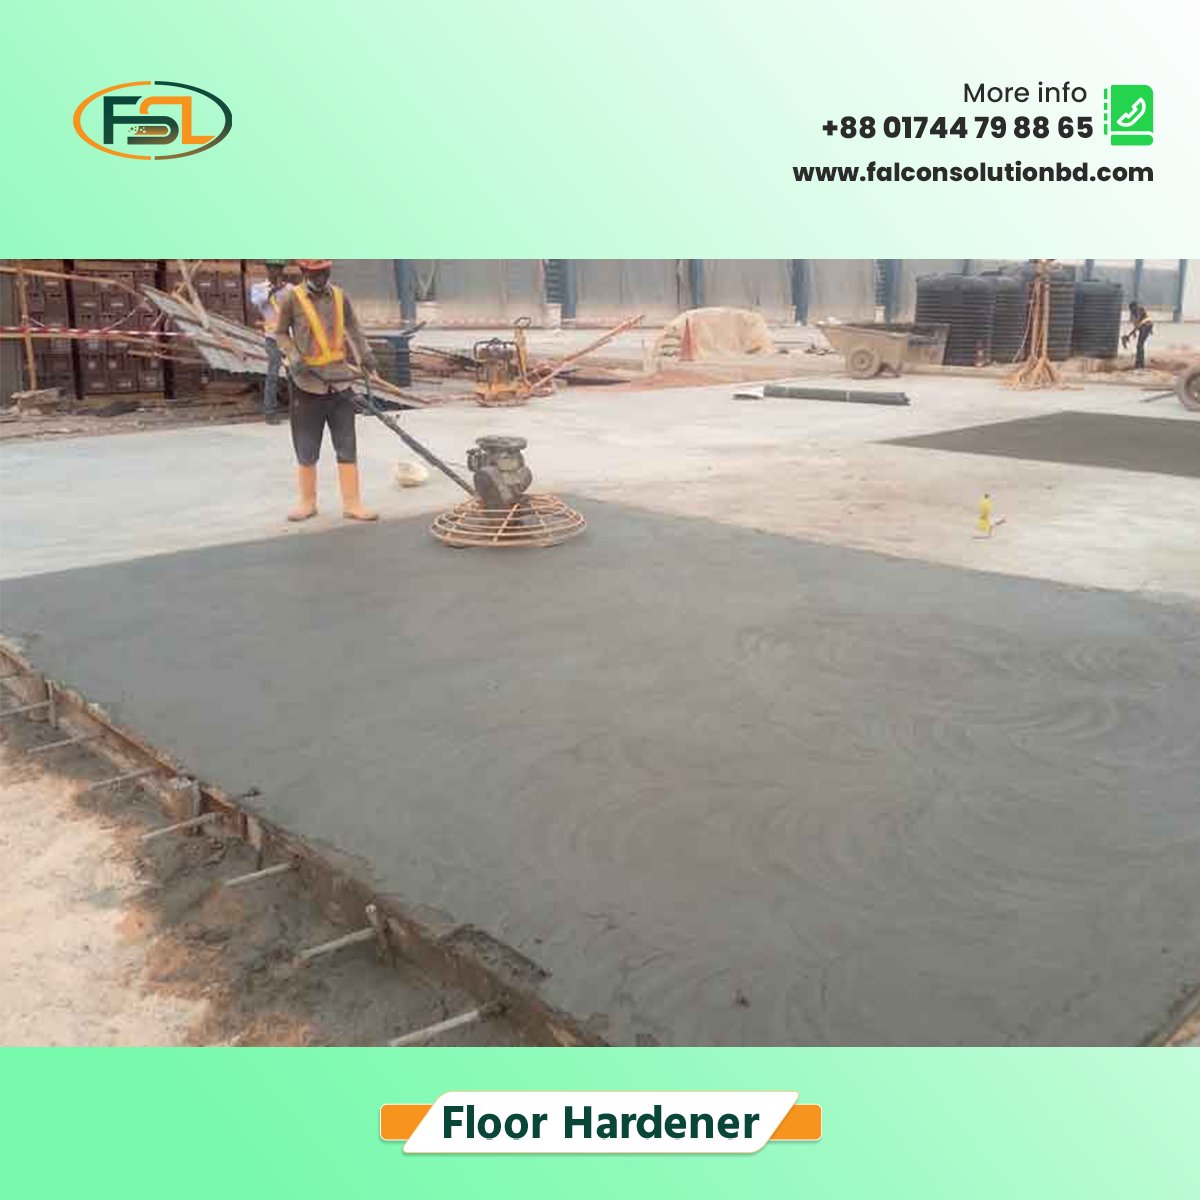 𝐅𝐥𝐨𝐨𝐫 𝐇𝐚𝐫𝐝𝐞𝐧𝐞𝐫 𝐢𝐧 𝐁𝐚𝐧𝐠𝐥𝐚𝐝𝐞𝐬𝐡
#Floor_Hardener_in_Bangladesh #FloorHardener #Industrial_Floor_Hardener_in_Bangladesh
#floor_hardener_solution #Floor_Hardener_System #FalconSolutionLtd #FloorHardener #ConcreteRevival #BangladeshFlooring #ConcreteSolutions